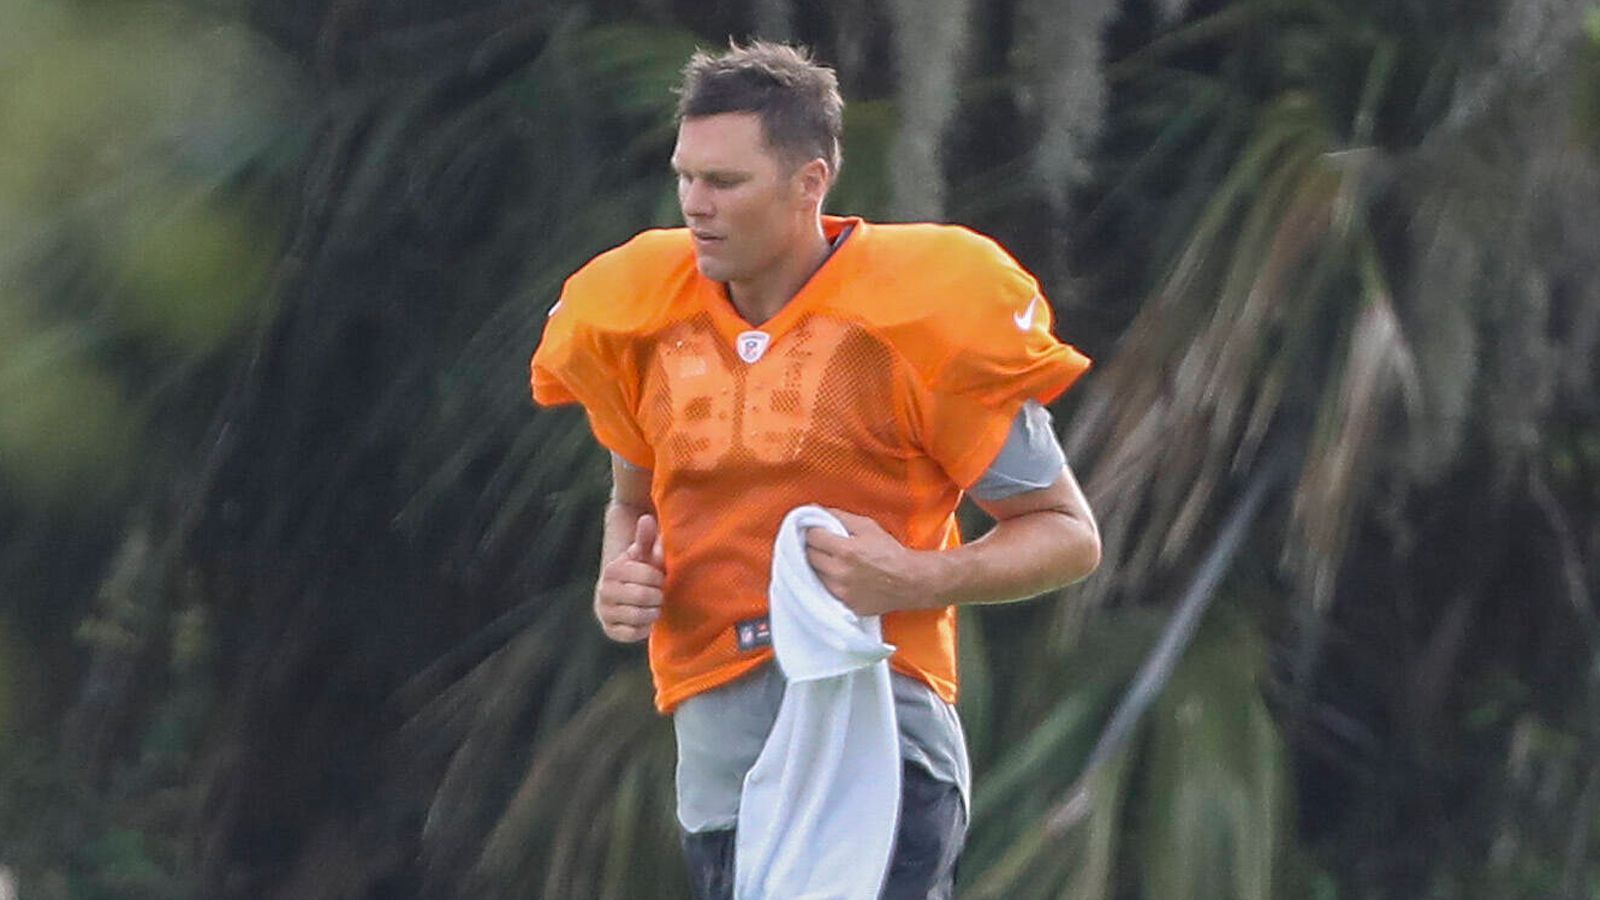 
                <strong>Tom Brady trainiert wieder</strong><br>
                ... ein ungewohnter Anblick! Brady in einem orangenen Trainingsshirt. Auf dem Footballfeld einer Schule in Tampa Bay trainierte der 42-Jährige mit einigen Teamkameraden der Buccaneers. Und keine Sorge, liebe Verschwörungstheoretiker - es fand alles im Rahmen der NFL-Statuten statt, so dass dieses formlose Workout rechtens war.
              